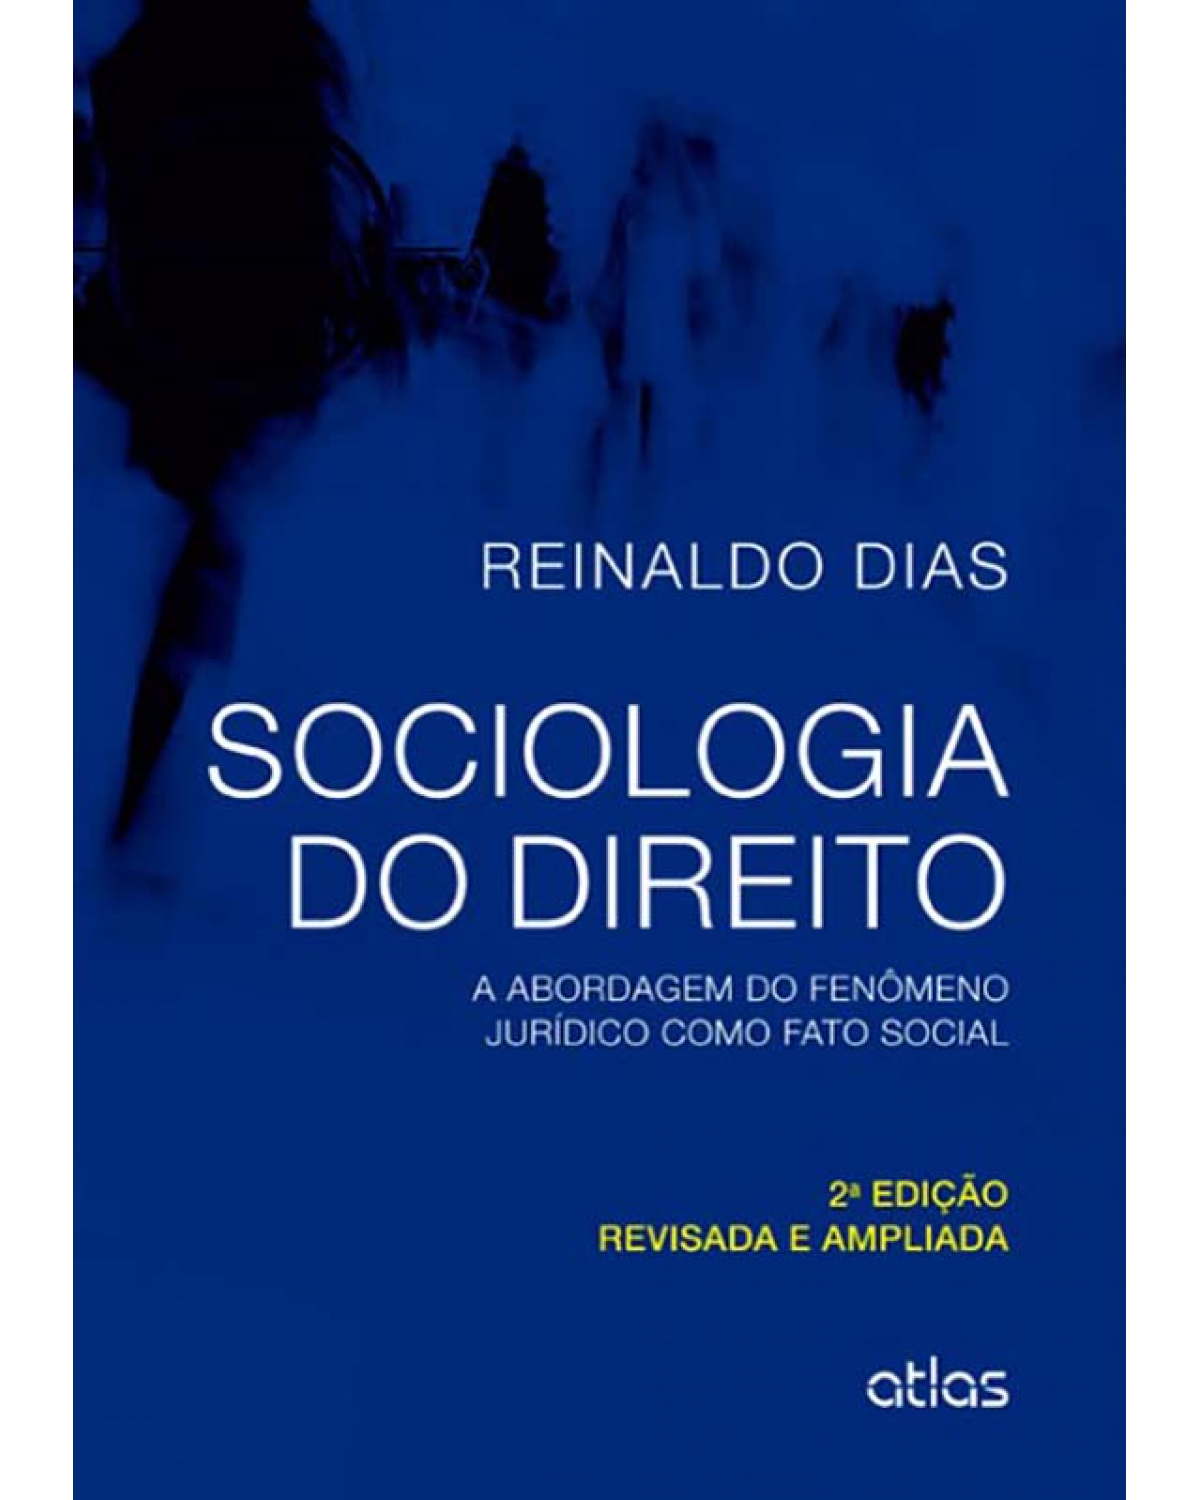 Sociologia do direito - A abordagem do fenômeno jurídico como fato social - 2ª Edição | 2014